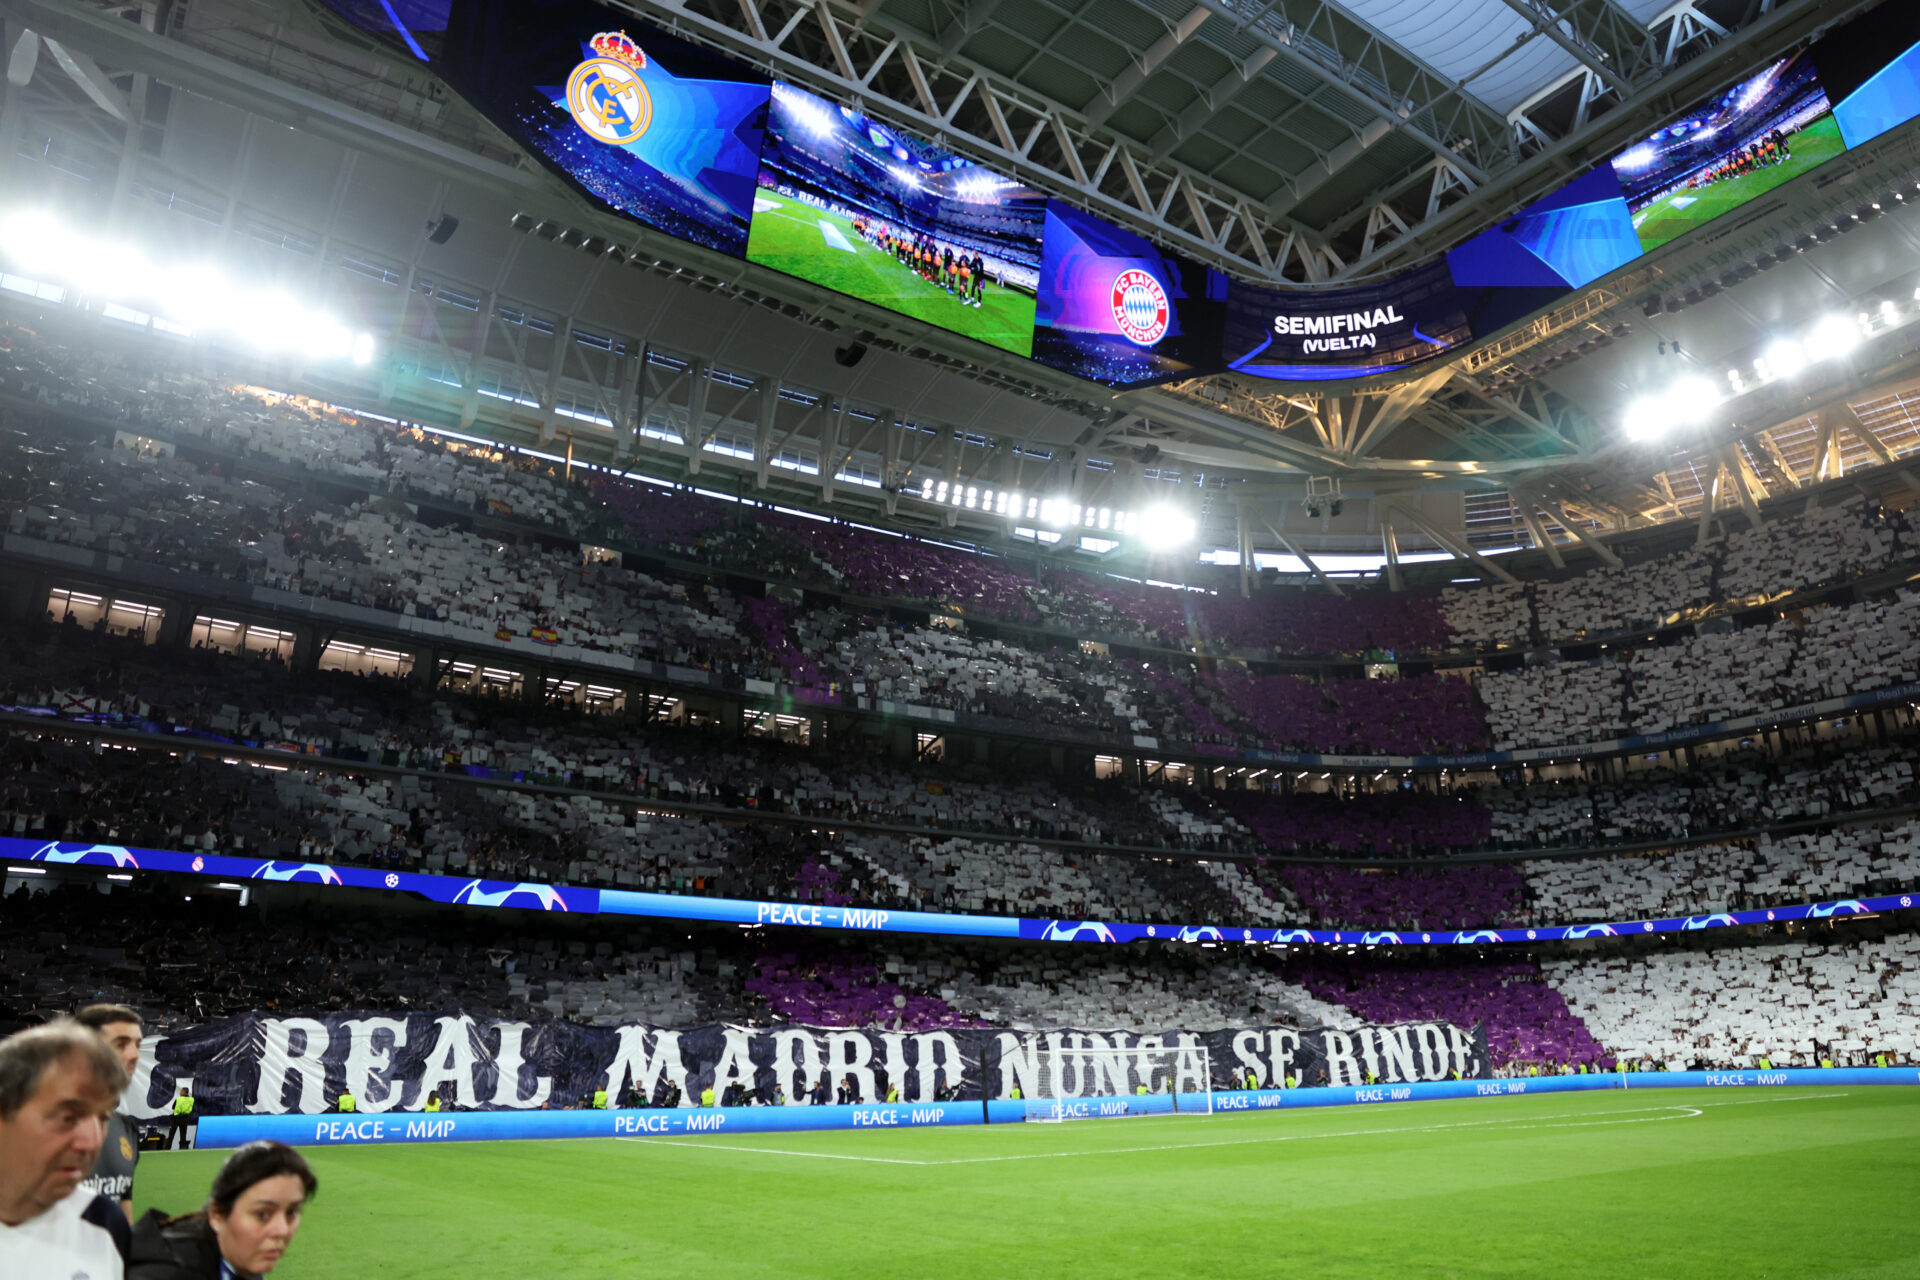 El Real Madrid nunca se rinde: las remontadas no son cuestión de suerte.